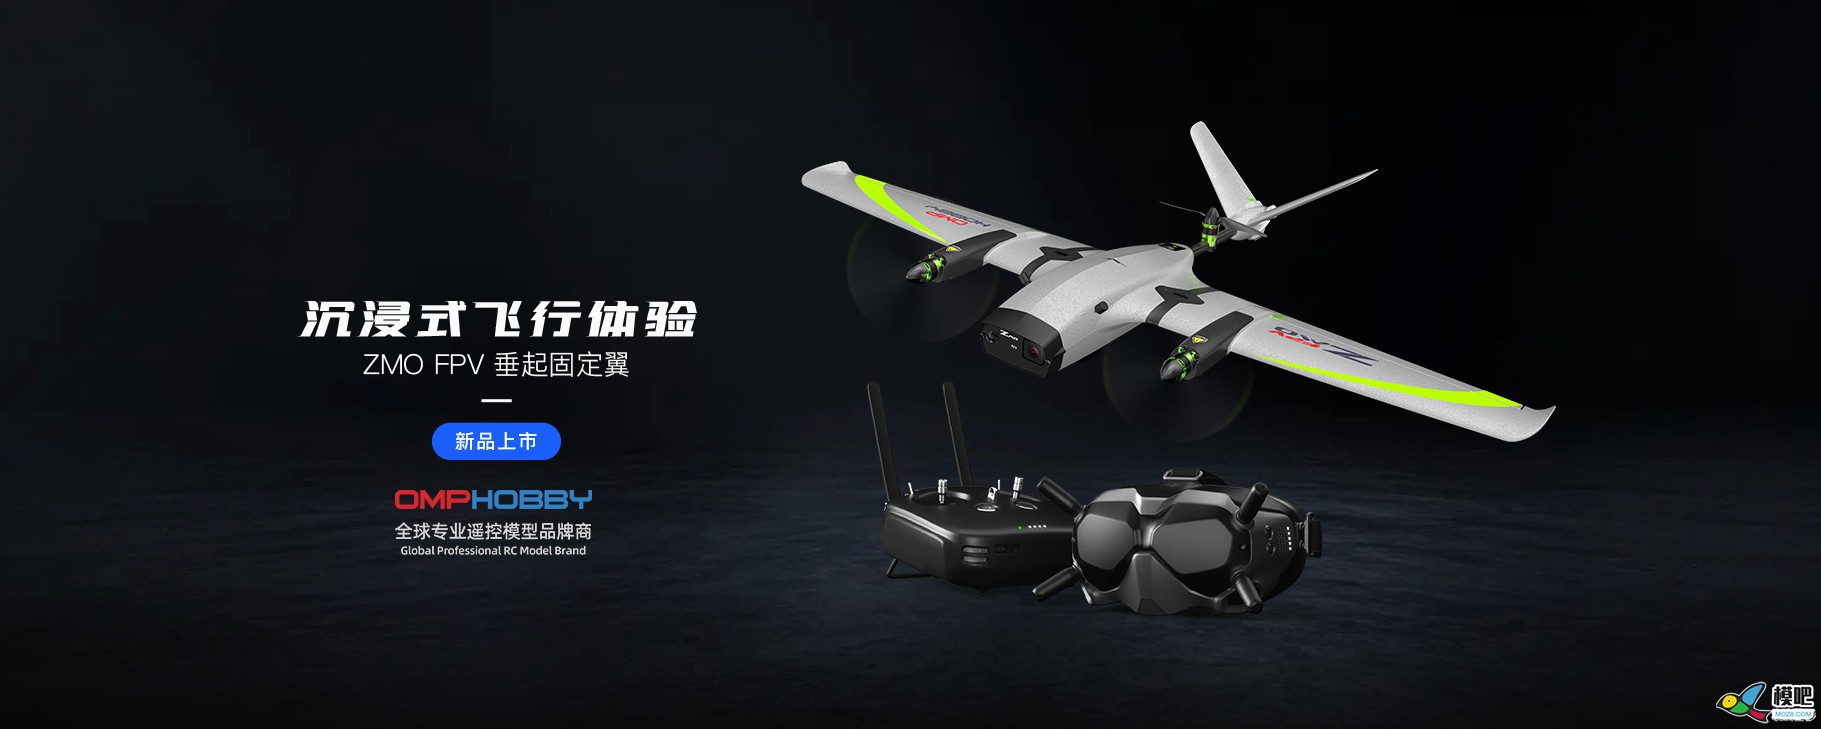 潮玩无人机-垂起固定翼FPV【ZMO】| 全新发售 无人机,航模,固定翼,飞手,飞行体验 作者:边锋领域 9144 